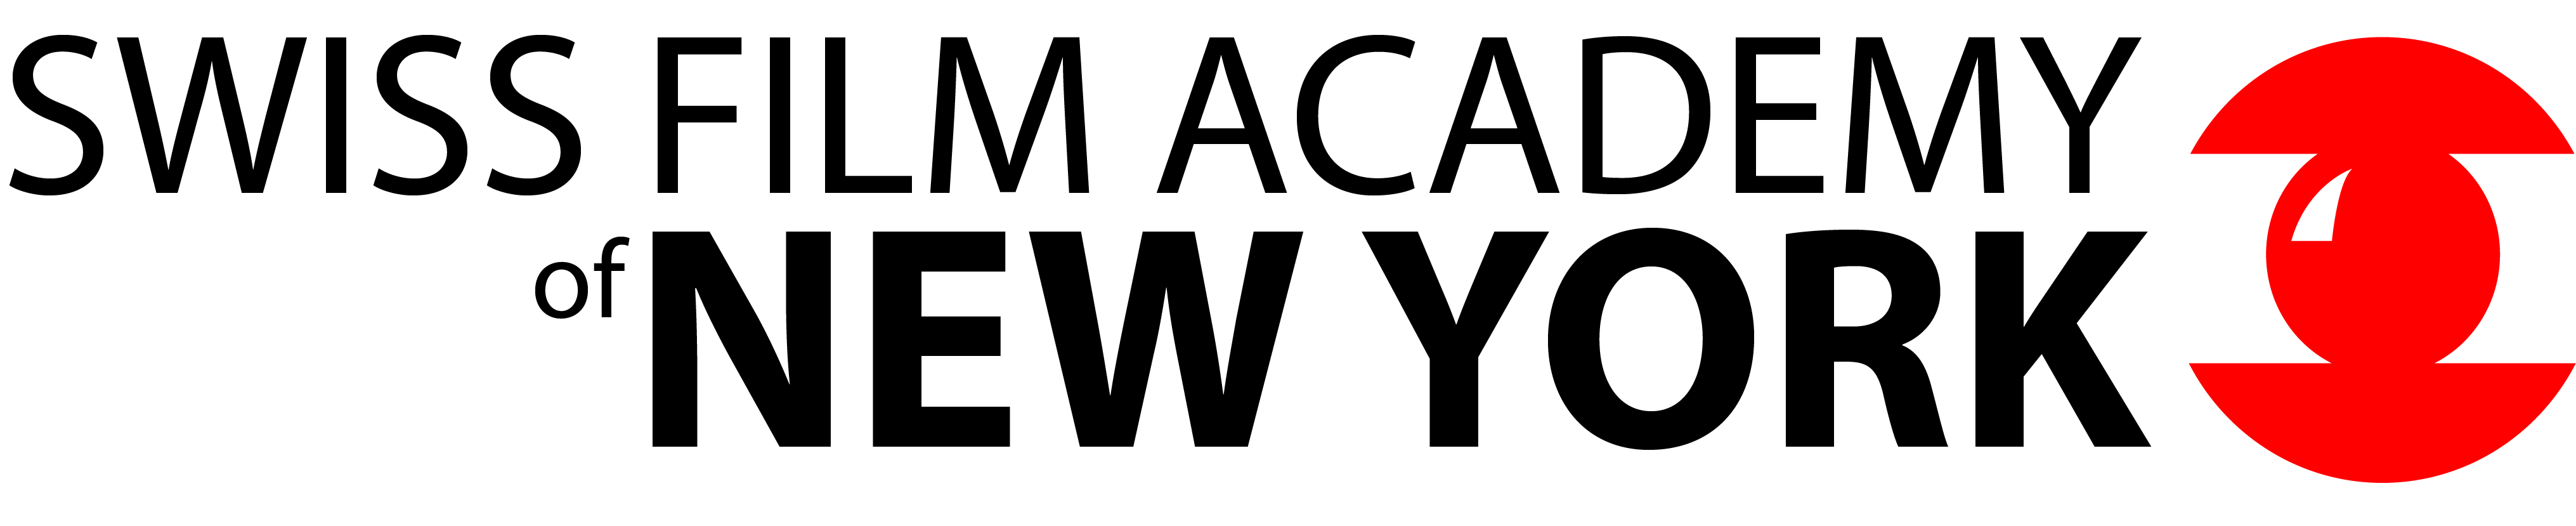 Swiss Film Academy's logo